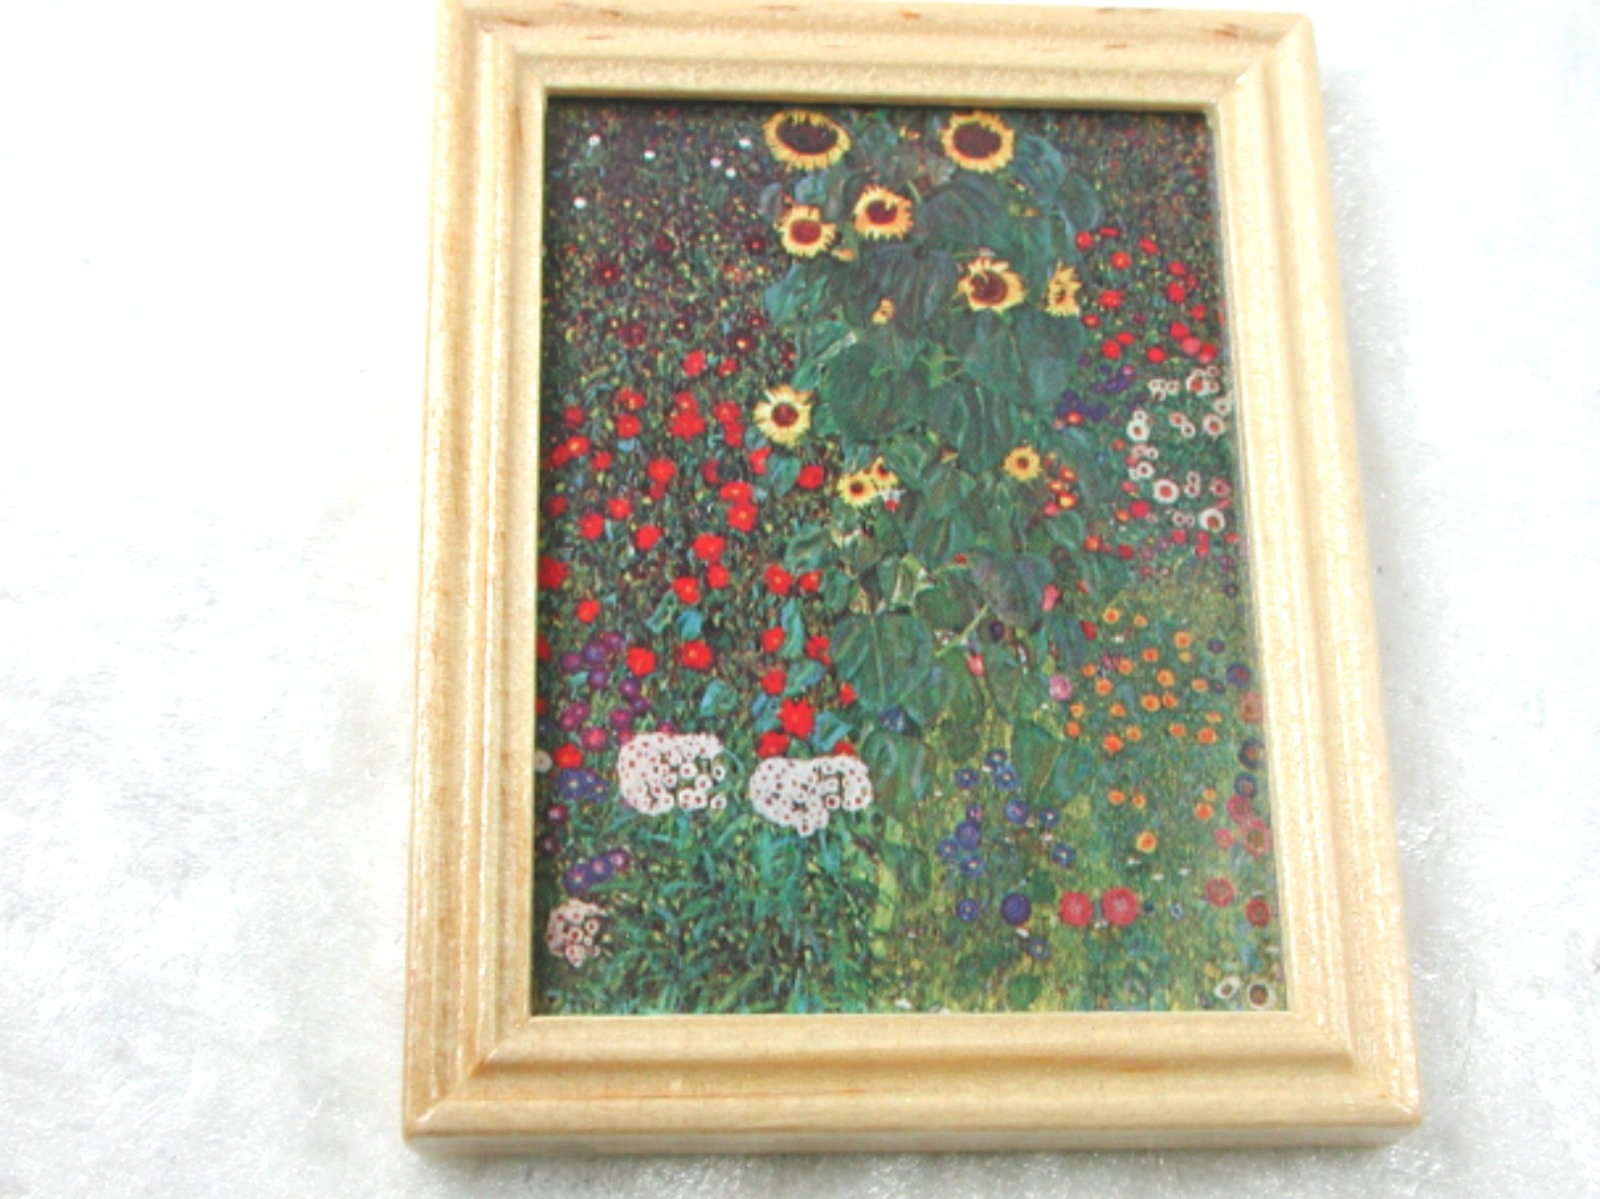 Gemäldekopie Bauerngarten im Holzrahmen 7 x 5,5 x 0,5 cm